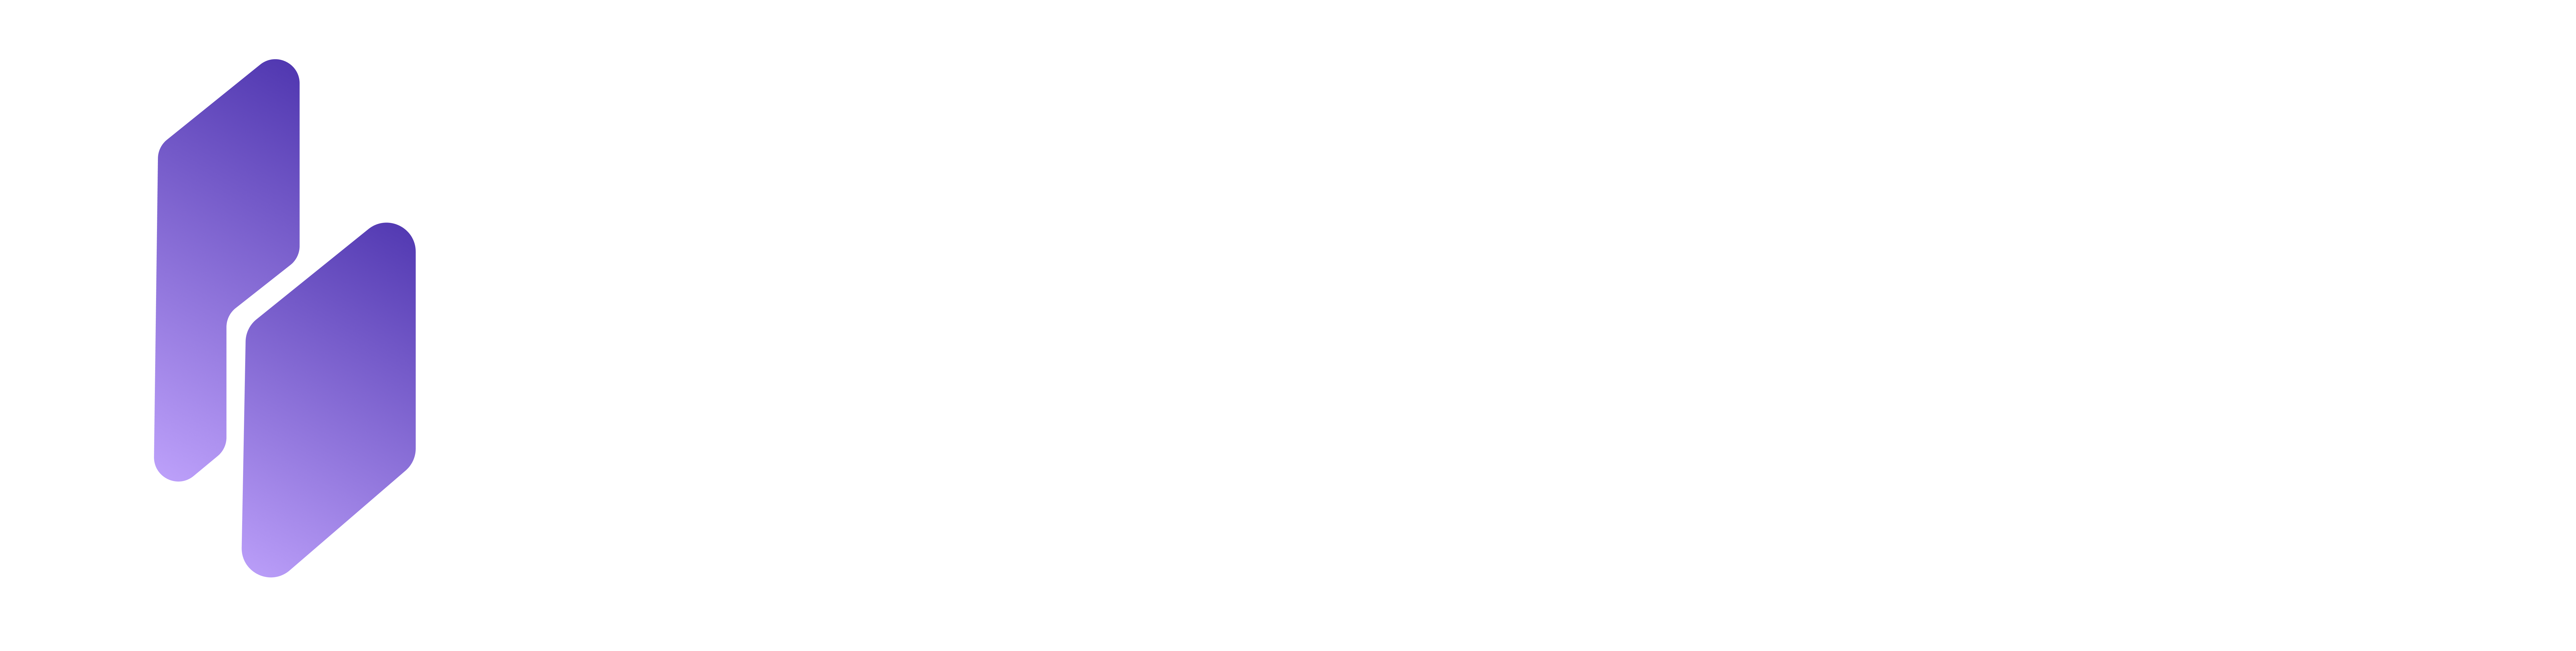 ByteHosting - Network Status